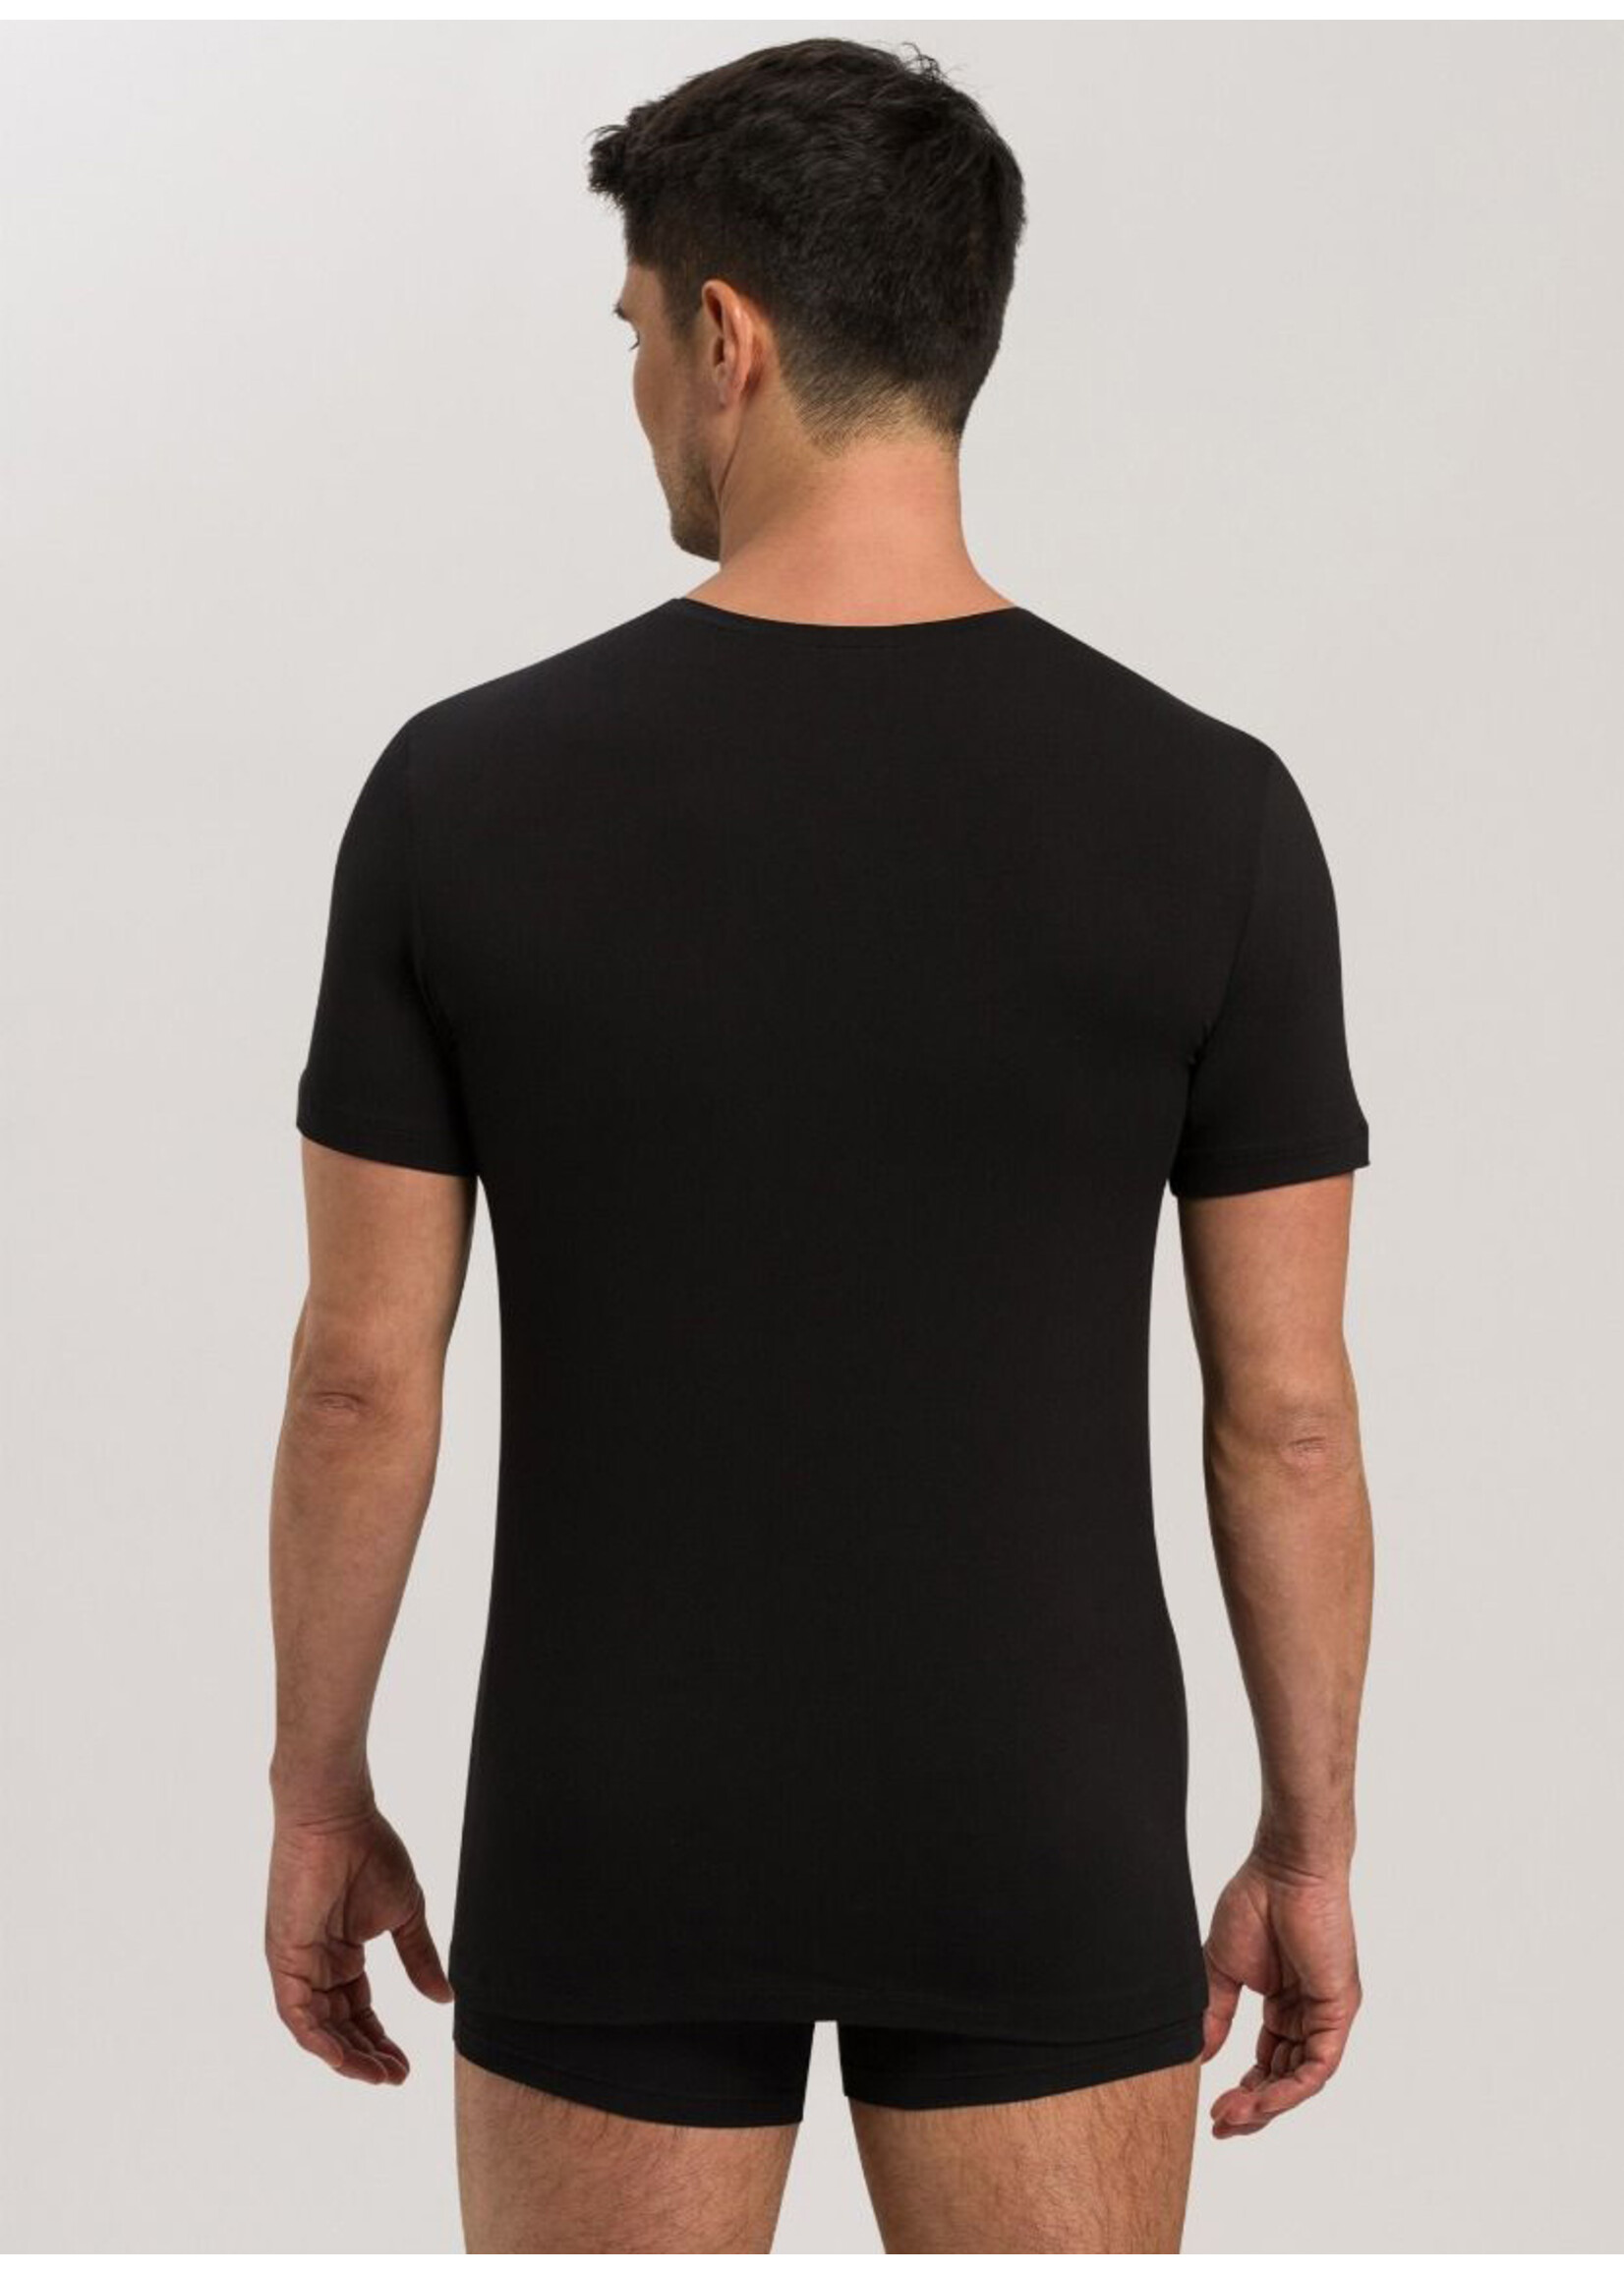 Hanro Shirt V-Neck Black Cotton Superior